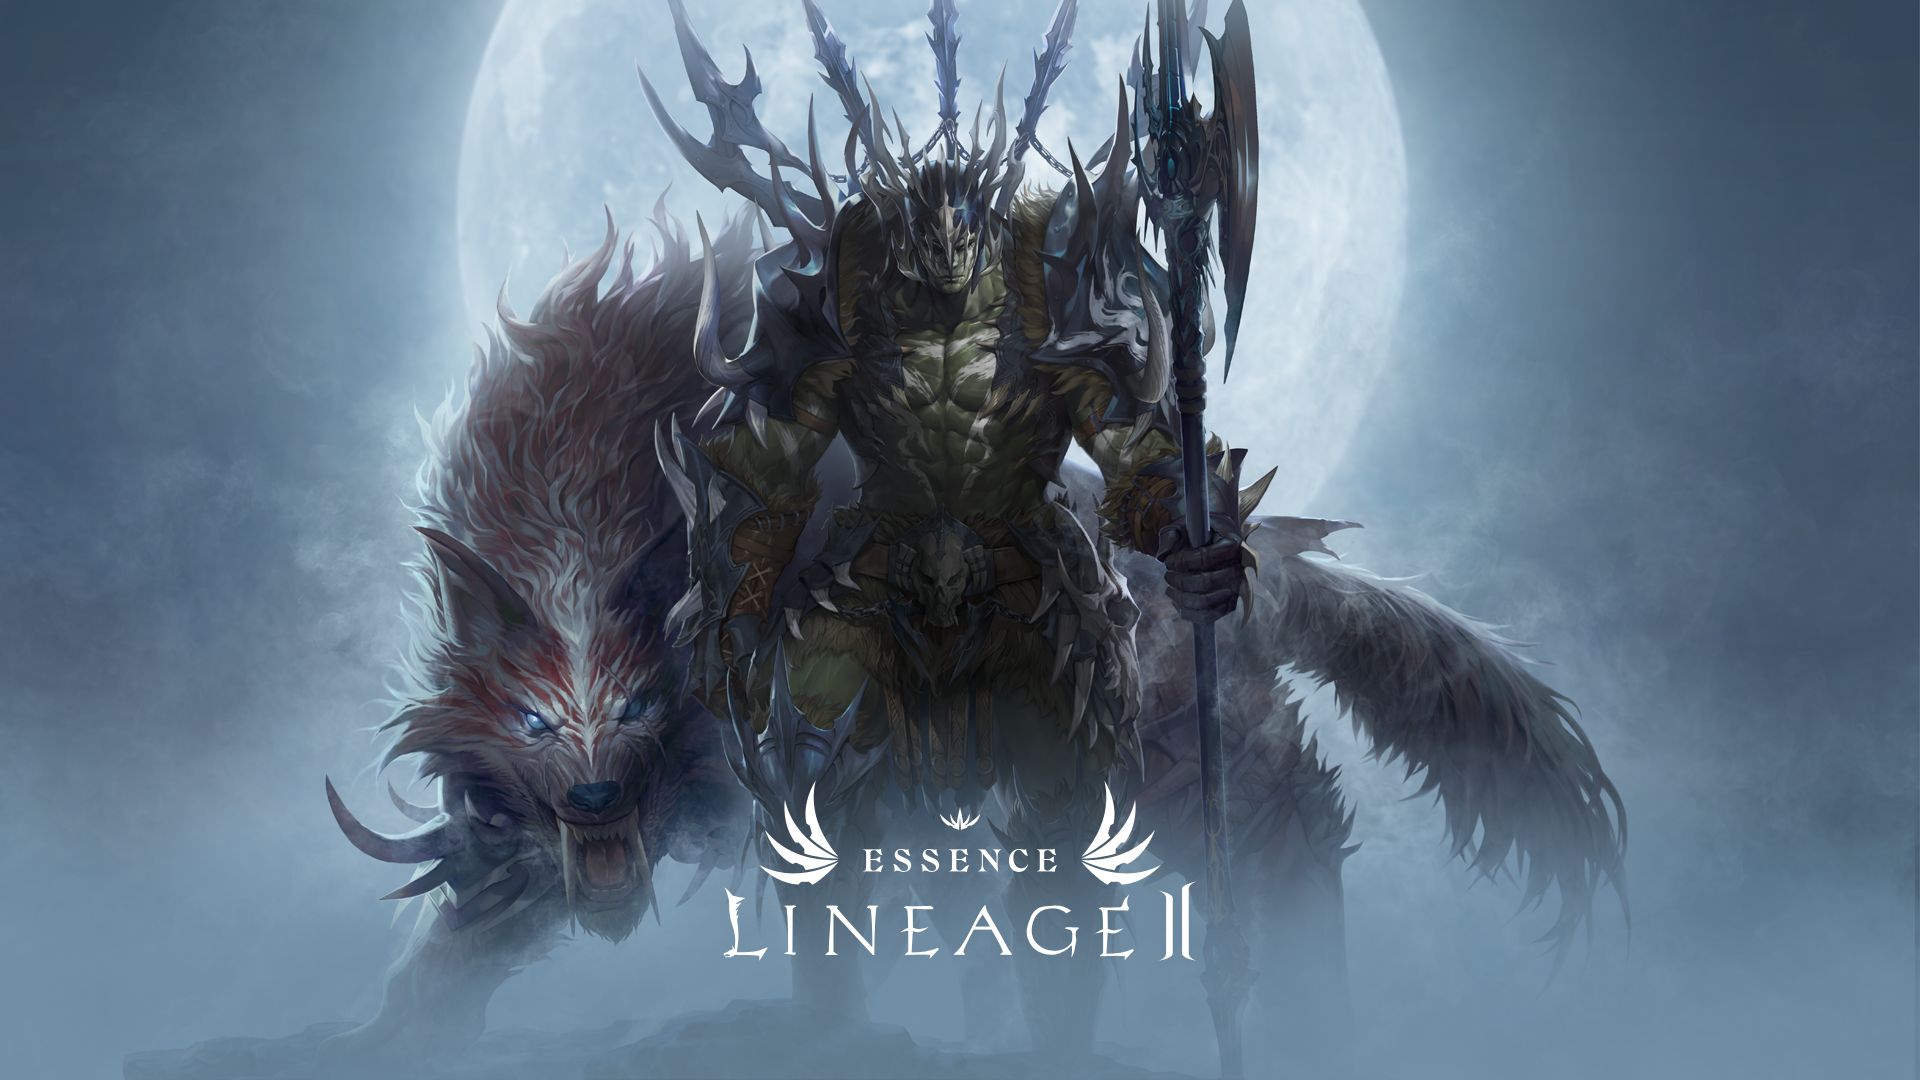  Lineage 2 Essence  - gra fantasy MMORPG za darmo